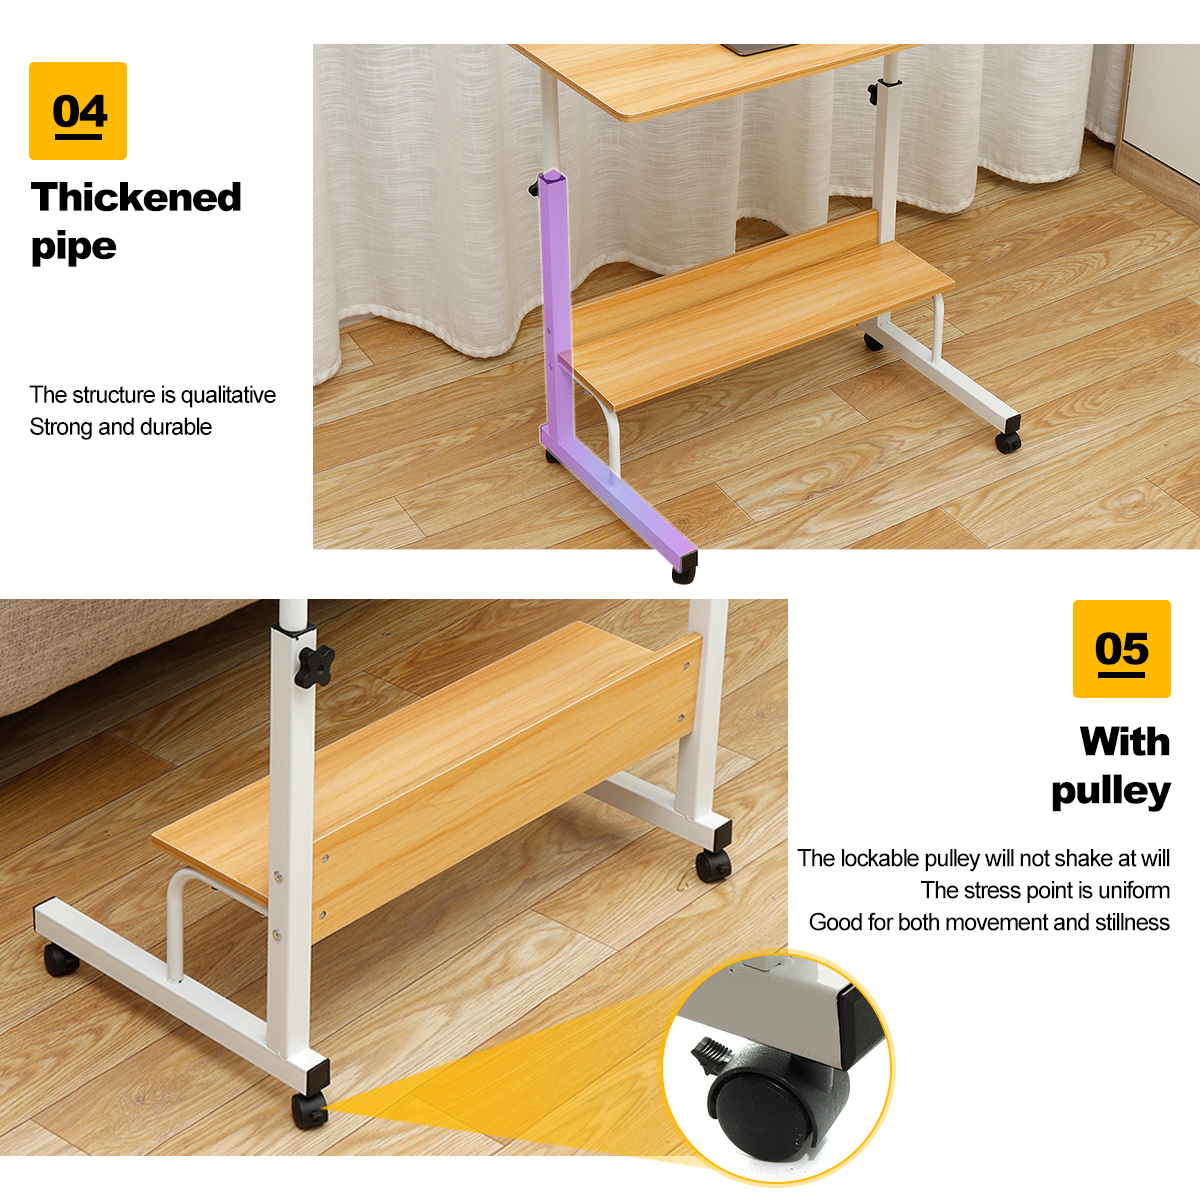 Adjustable-Laptop-Desk-Movable-Bed-Desk-Writing-Small-Desk-Lifting-Desk-Mobile-Bedside-Table-for-Hom-1777082-4